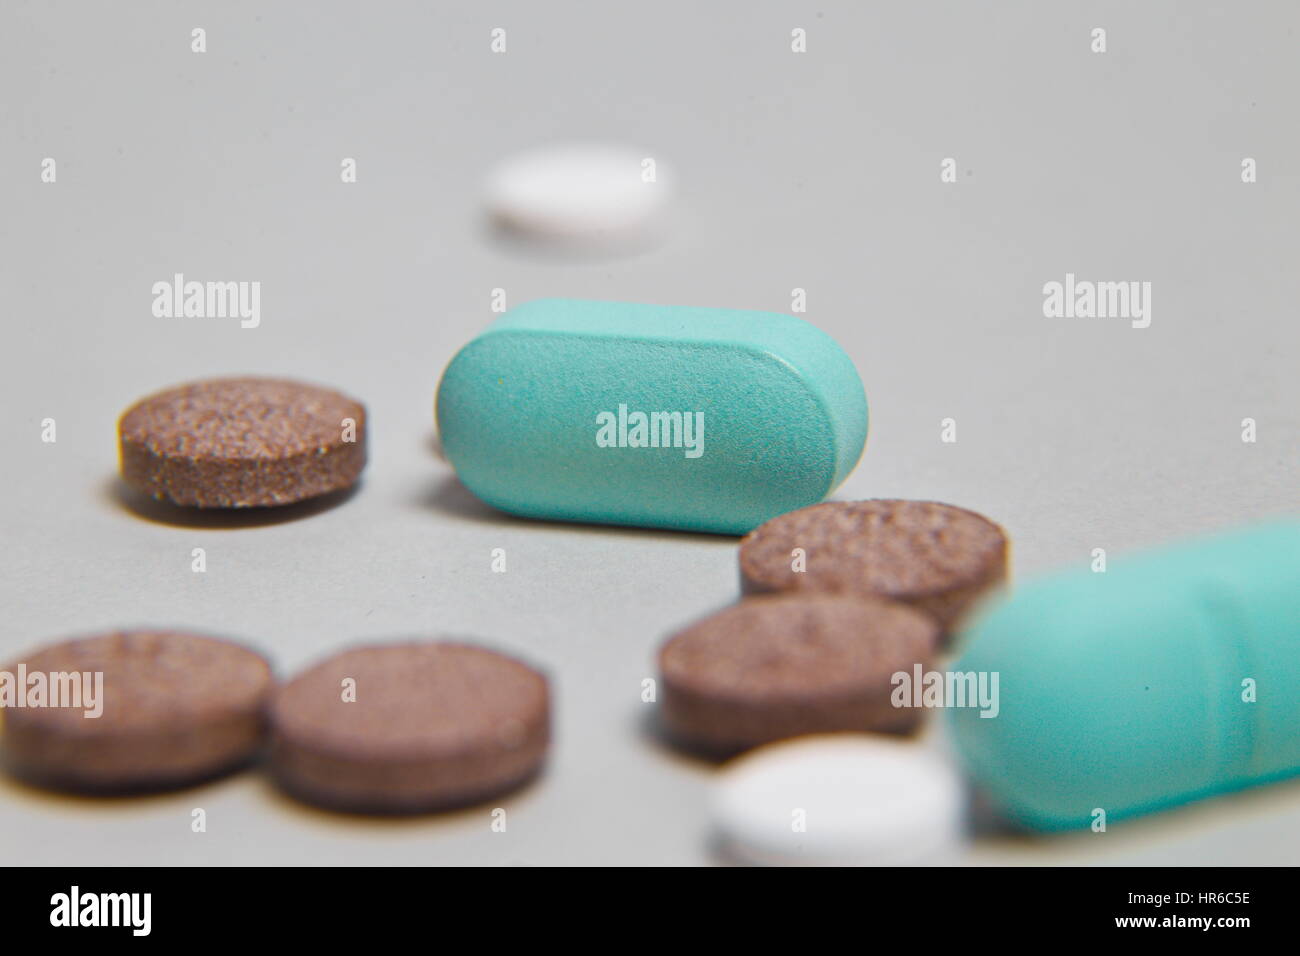 Montón de píldoras azules con inyección de color verde en el fondo. Herramientas médicas. Foto de stock